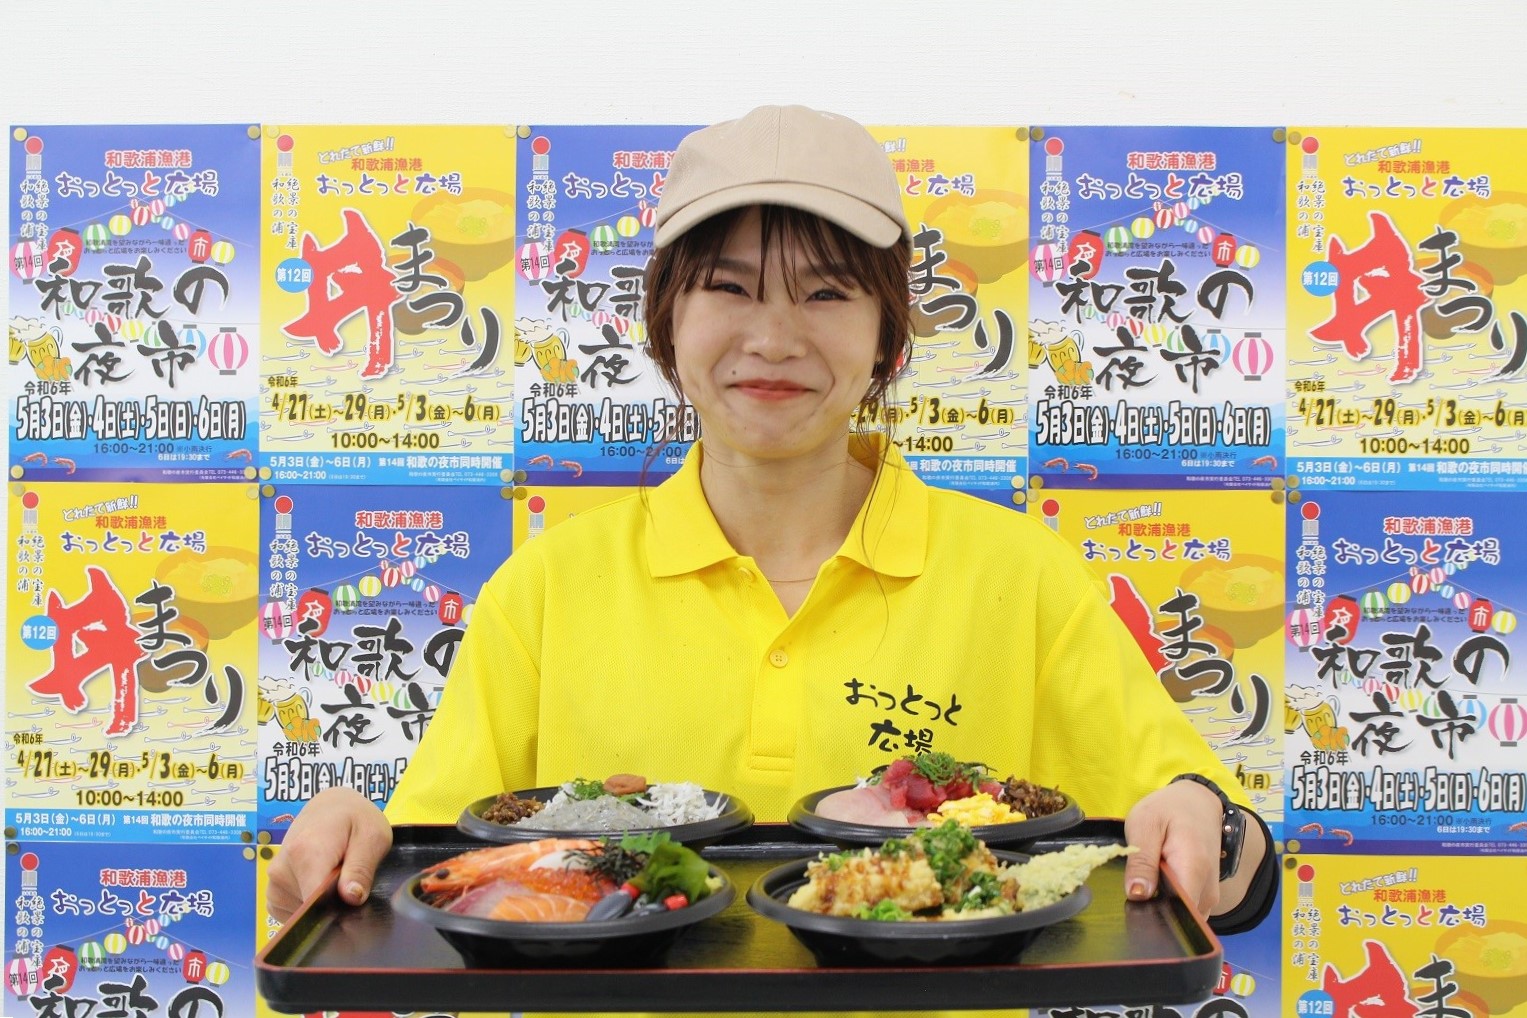 和歌浦を盛り上げる春のイベント『丼まつり』『和歌の夜市』『和歌浦漁港朝市』が開催！